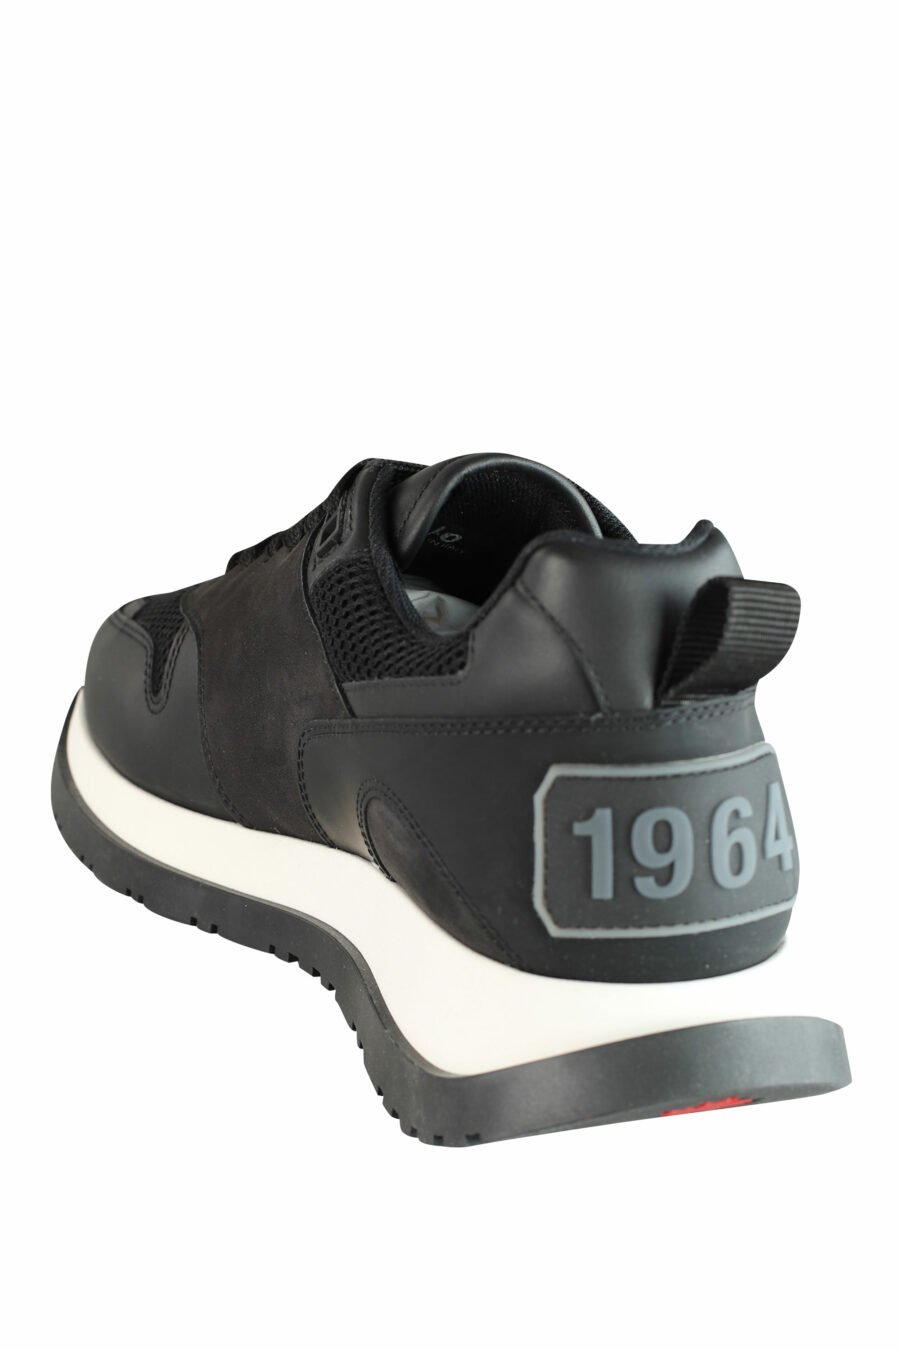 Sapatilhas de corrida pretas com sola branca e logótipo preto - IMG 1434